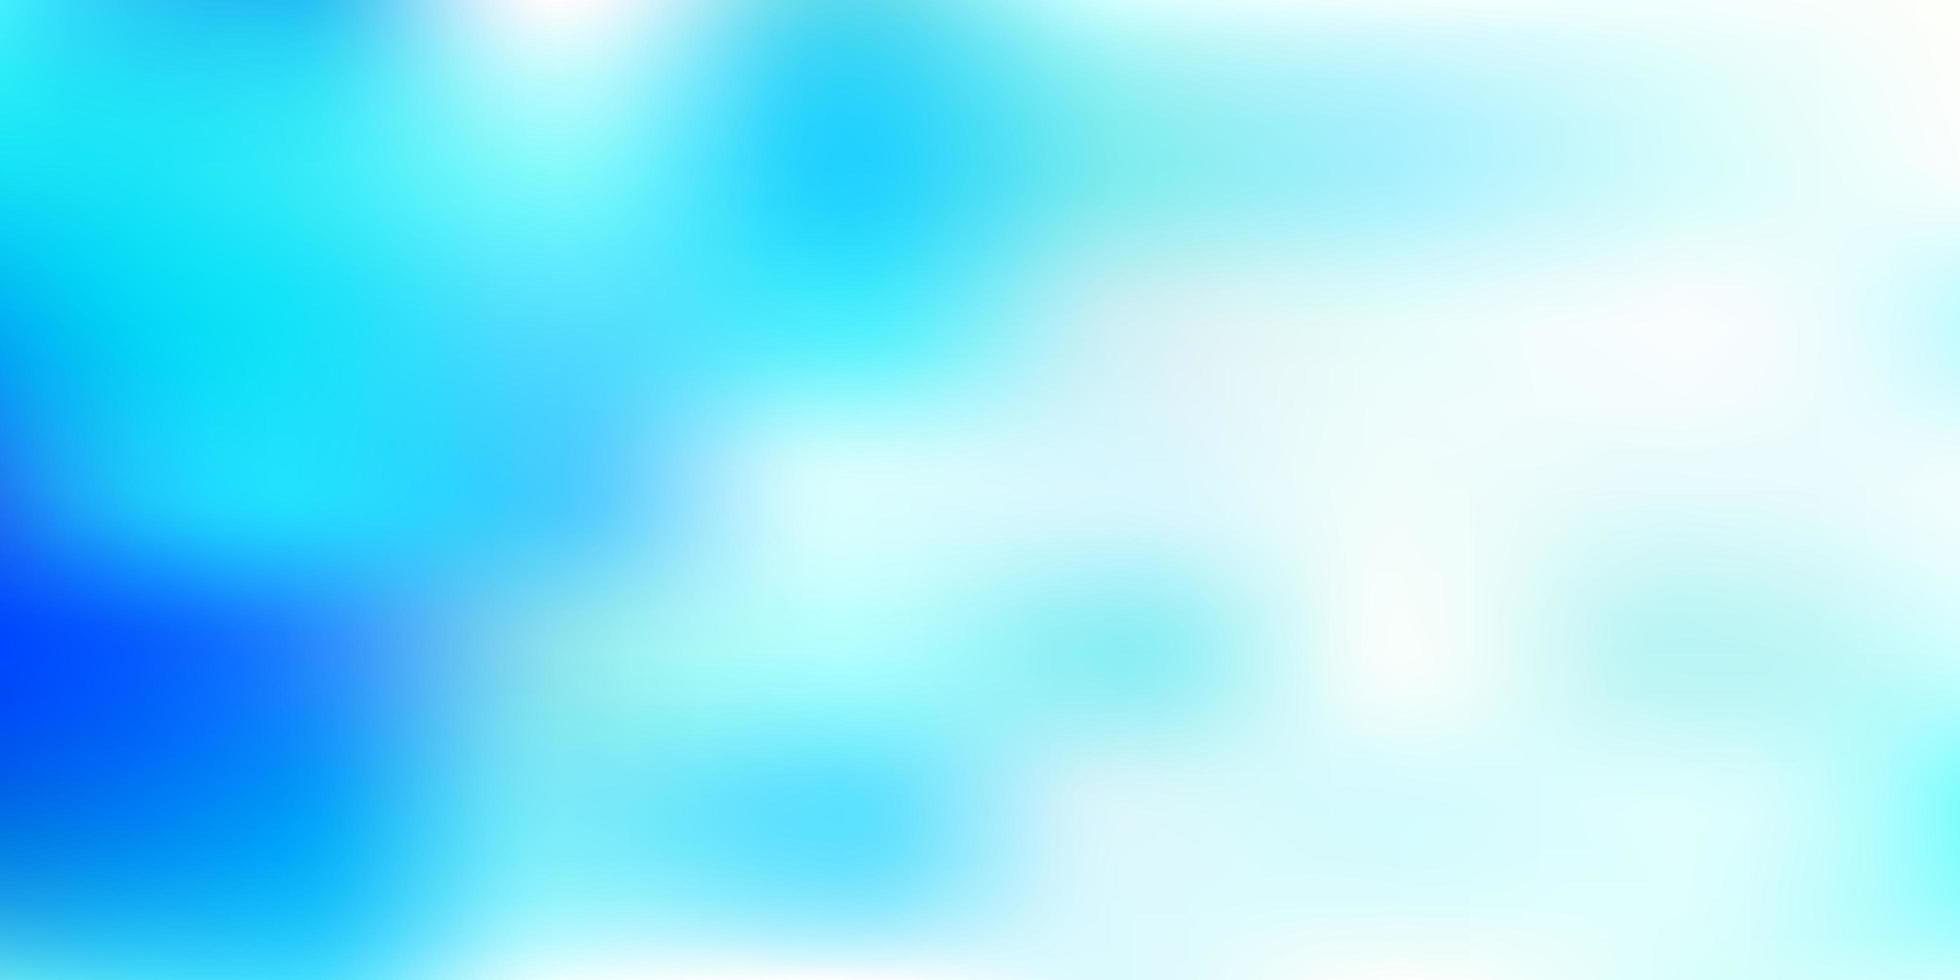 Light blue vector abstract blur pattern